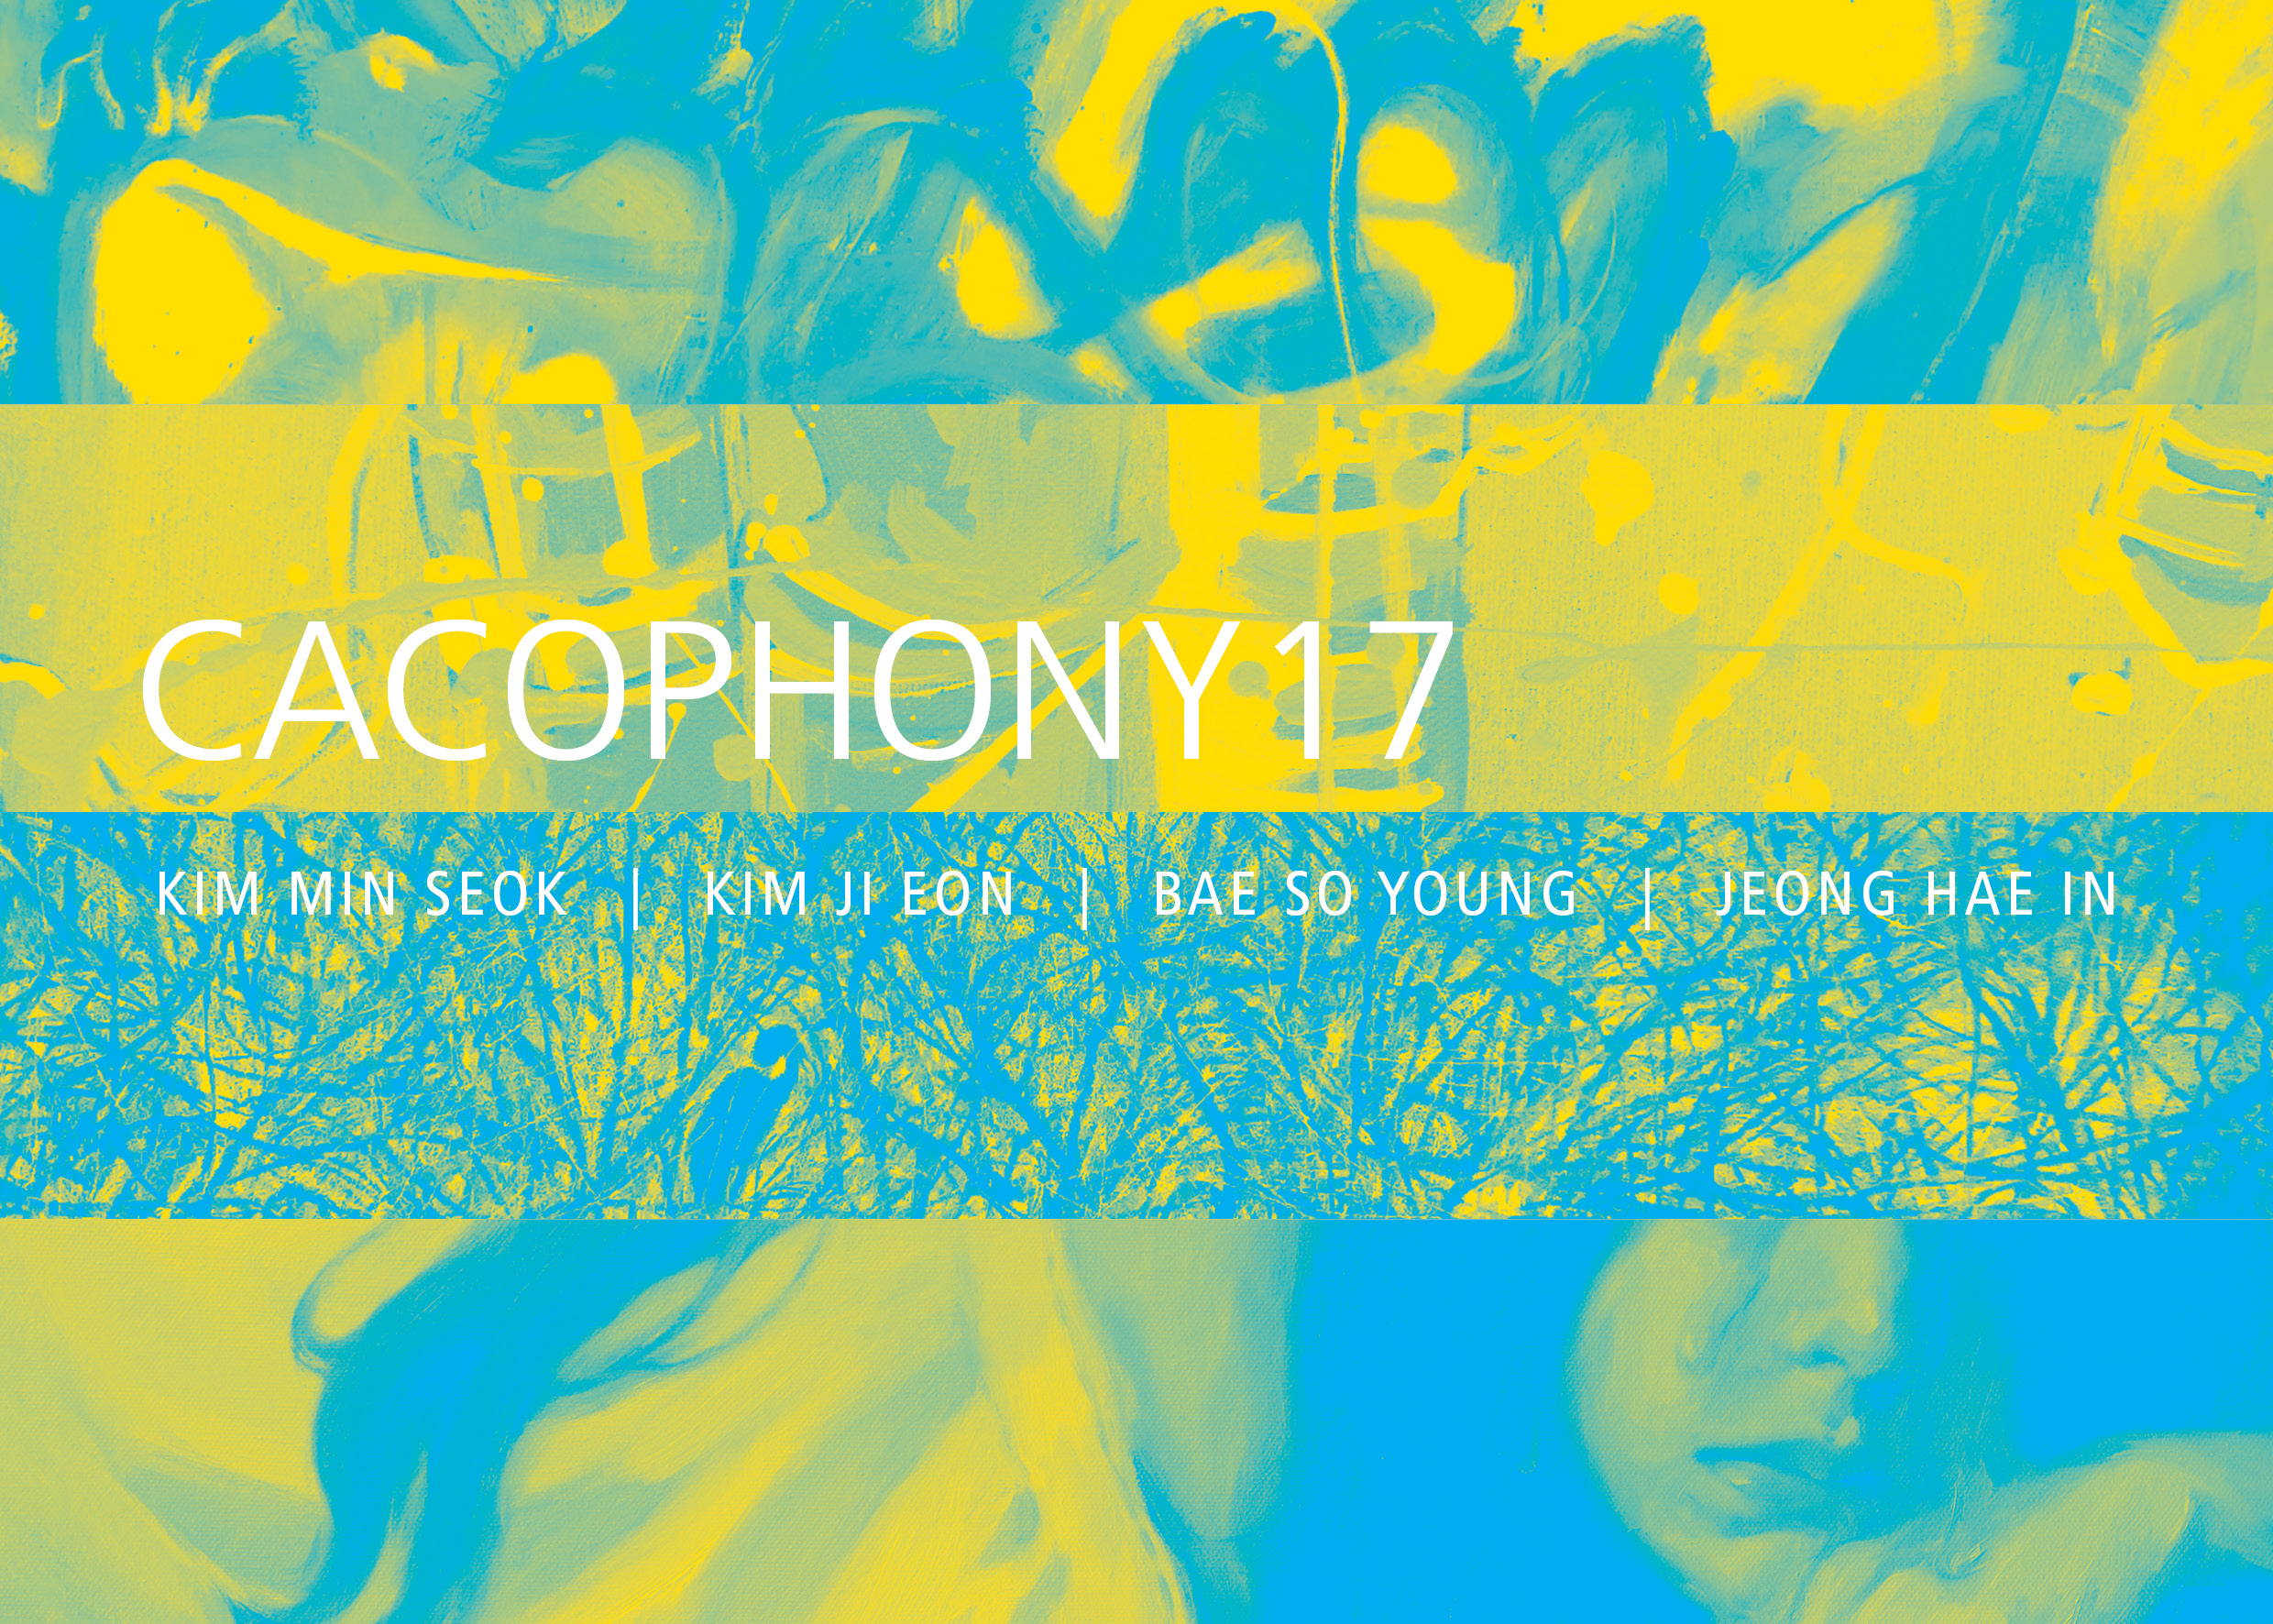 Cacophony17